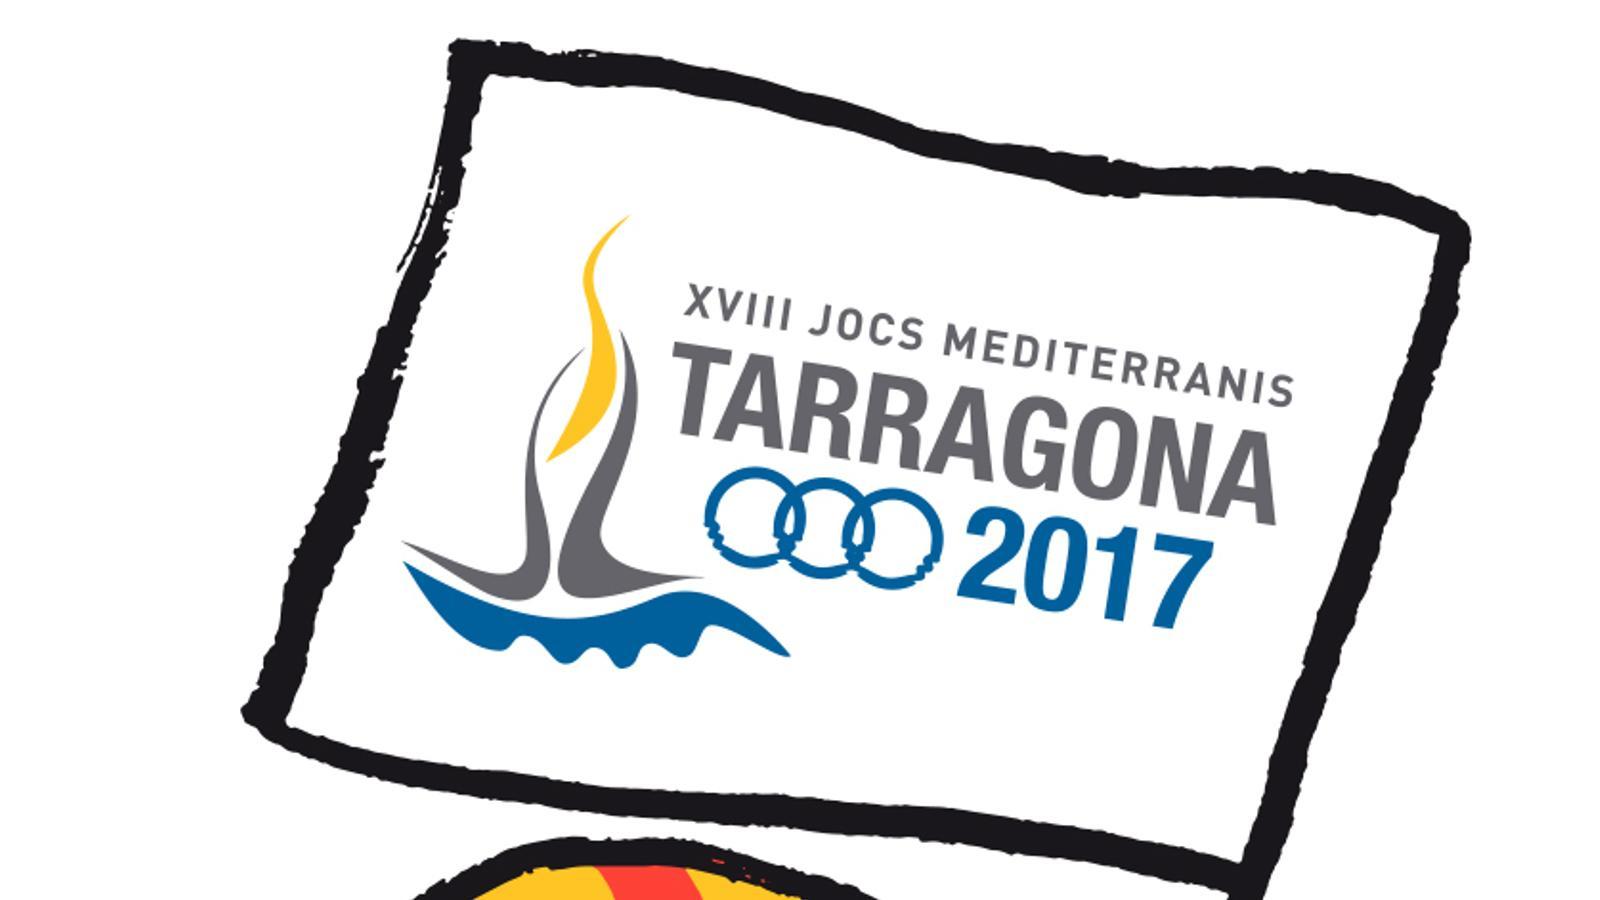 http://www.tarragona2017.cat/ave-tarracus-presentada-la-mascota-dels-jocs-mediterranis-tarragona-2017/